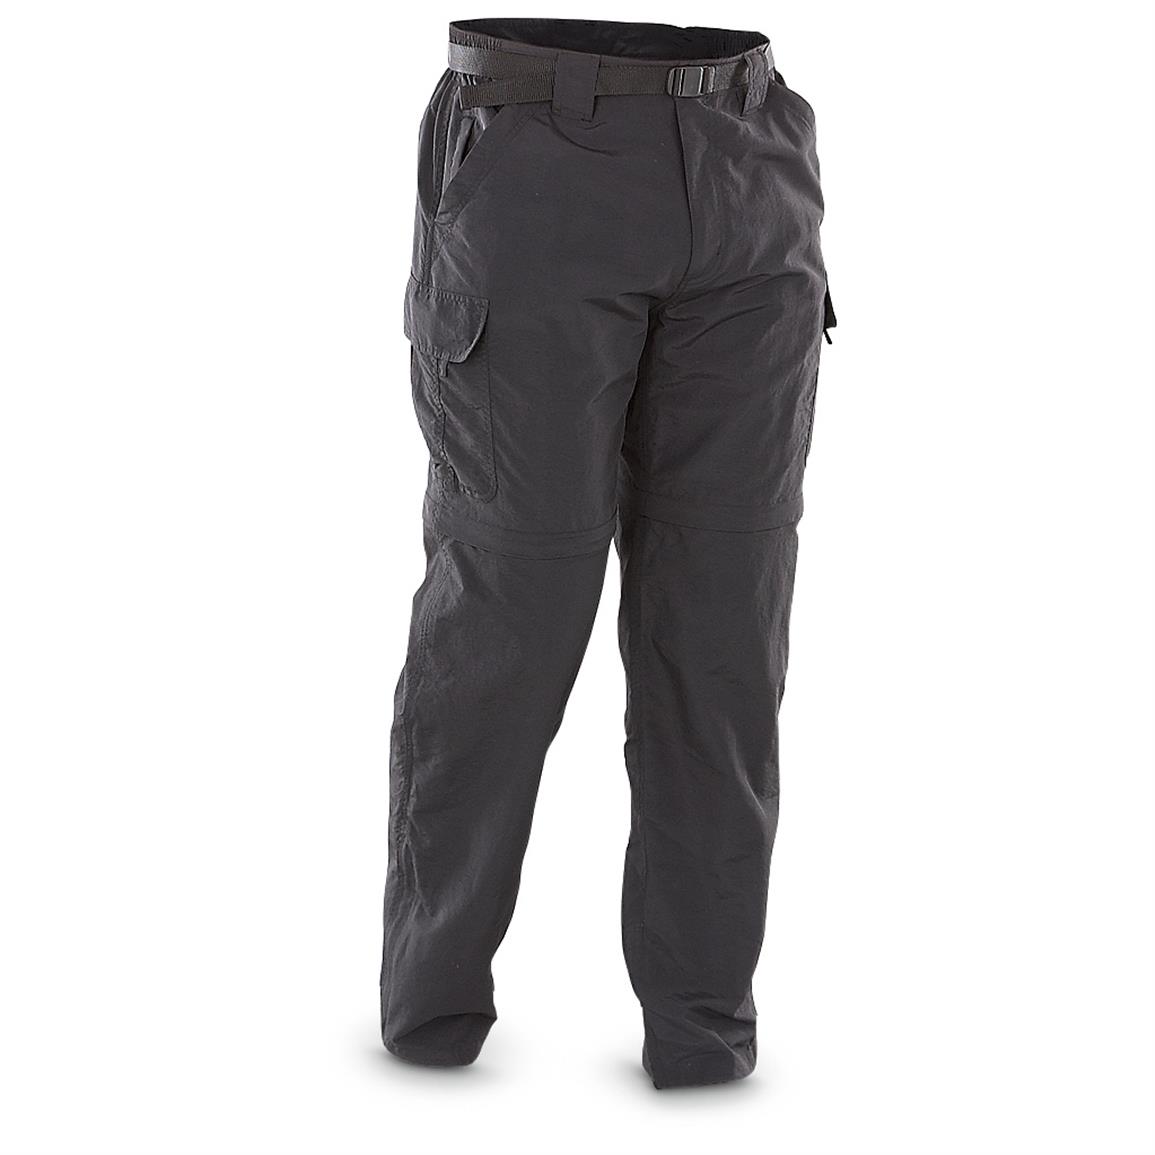 Marino Bay Nylon Baja Zip-off Pants - 627545, Jeans & Pants at ...